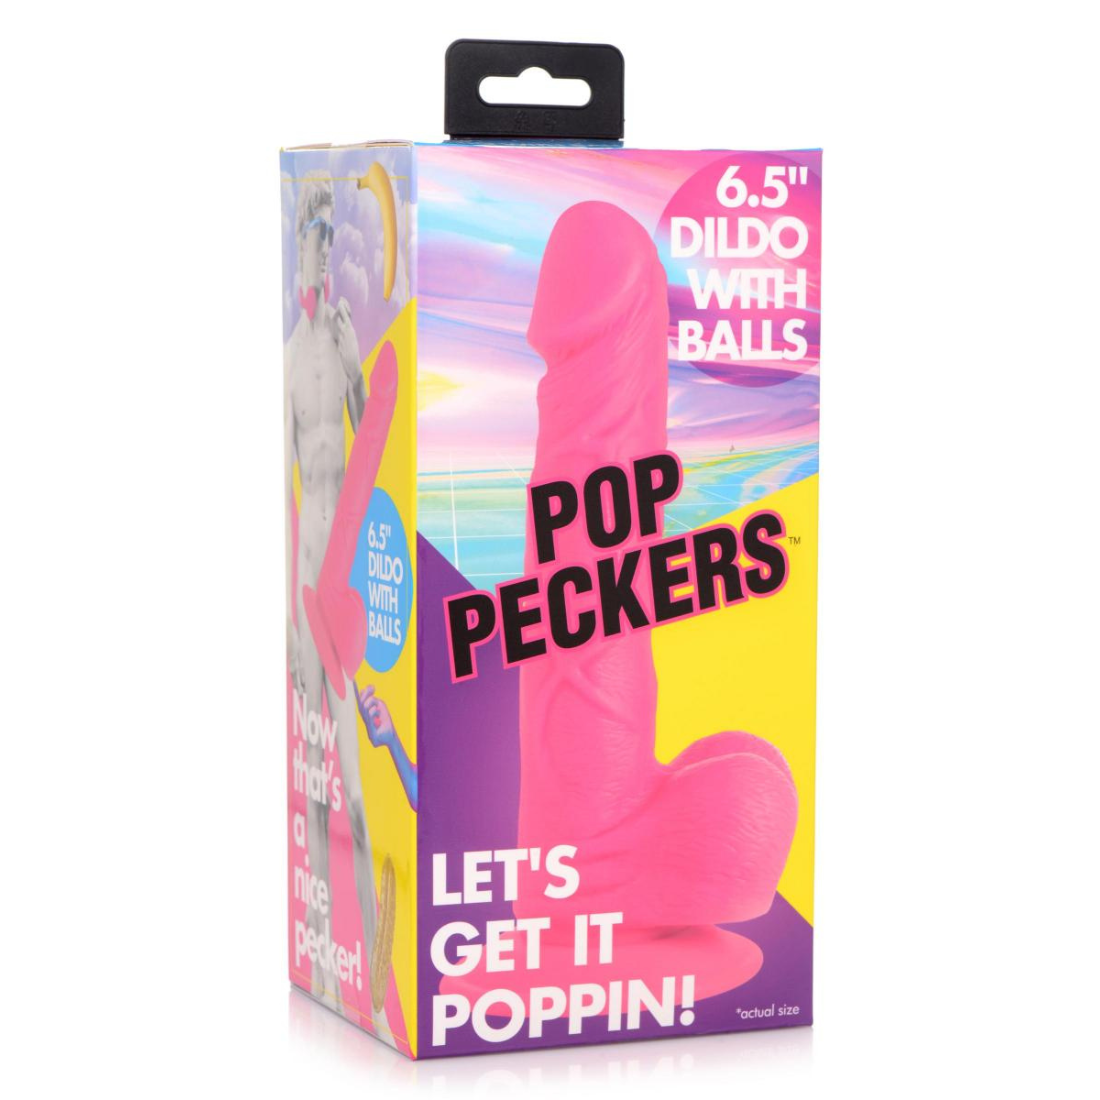 Ultieme 16.5 cm lange, roze dildo van het merk Pop Peckers en te koop bij Flavourez.